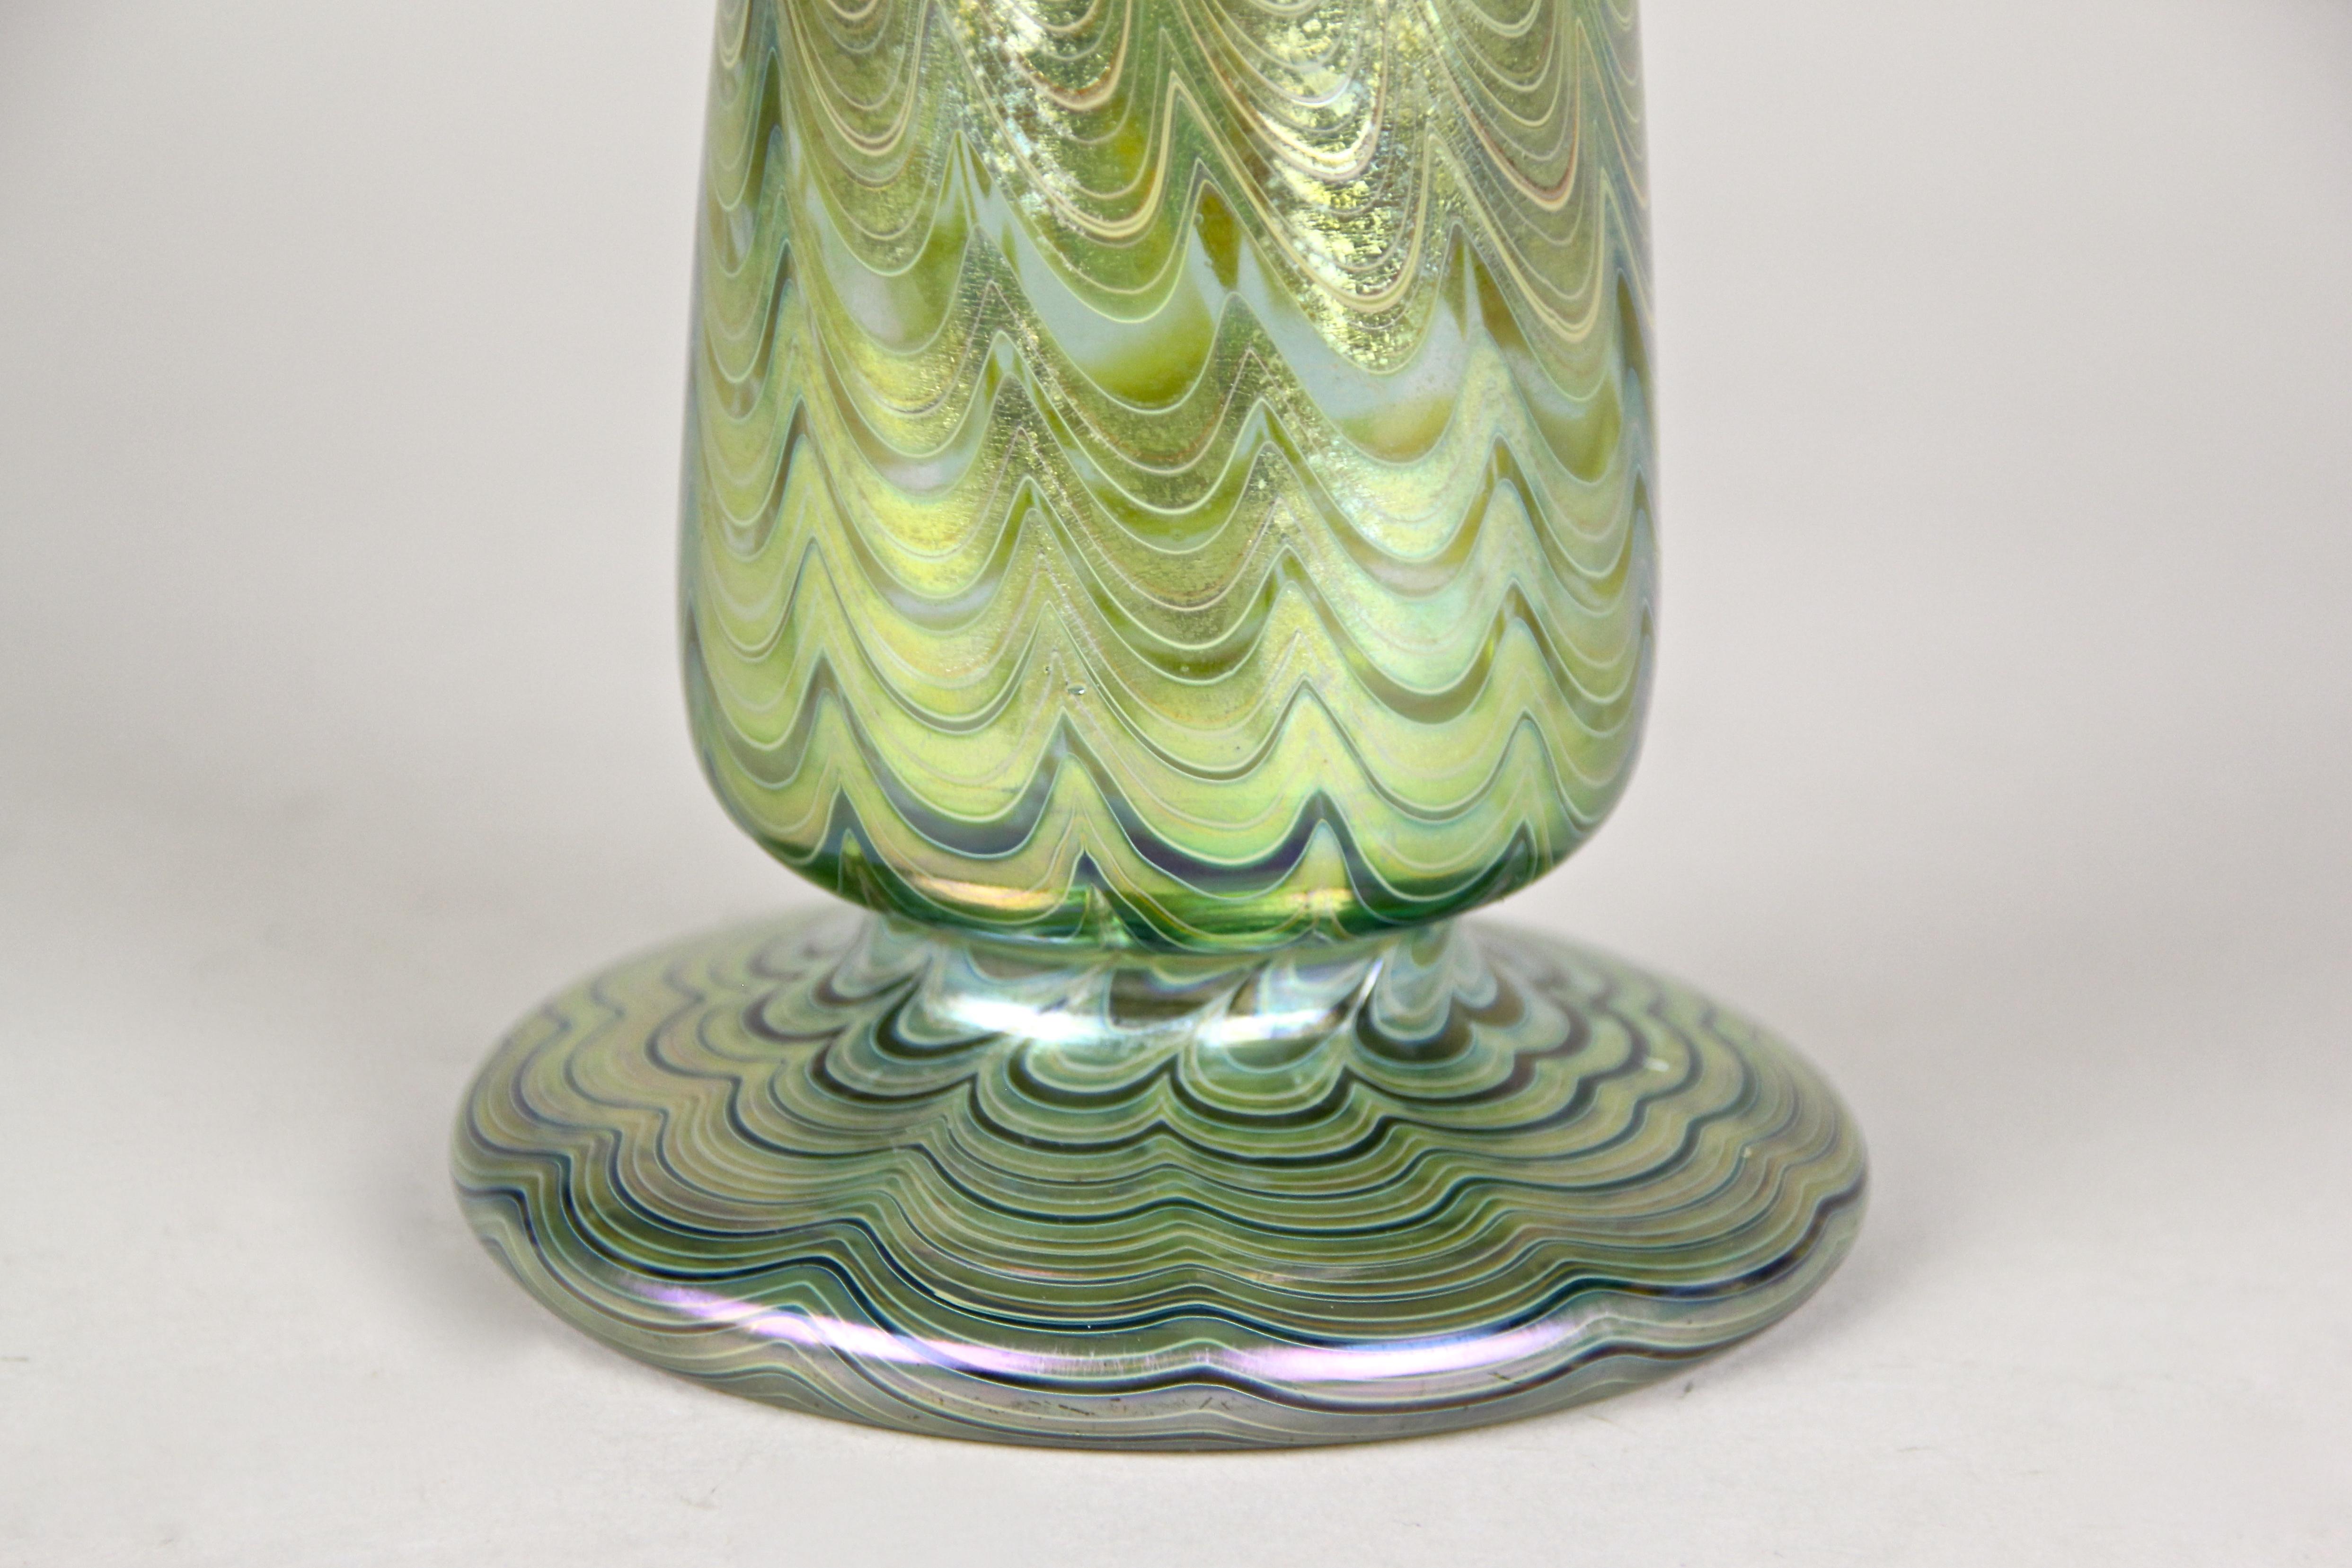 Fantastique vase en verre Loetz Witwe provenant des célèbres ateliers de Klostermuehle/ Bohemia, vers 1899. Le vase de forme magnifique a été travaillé avec art dans le décor époustouflant Phaenomen green genre 6893 et impressionne par ses couches